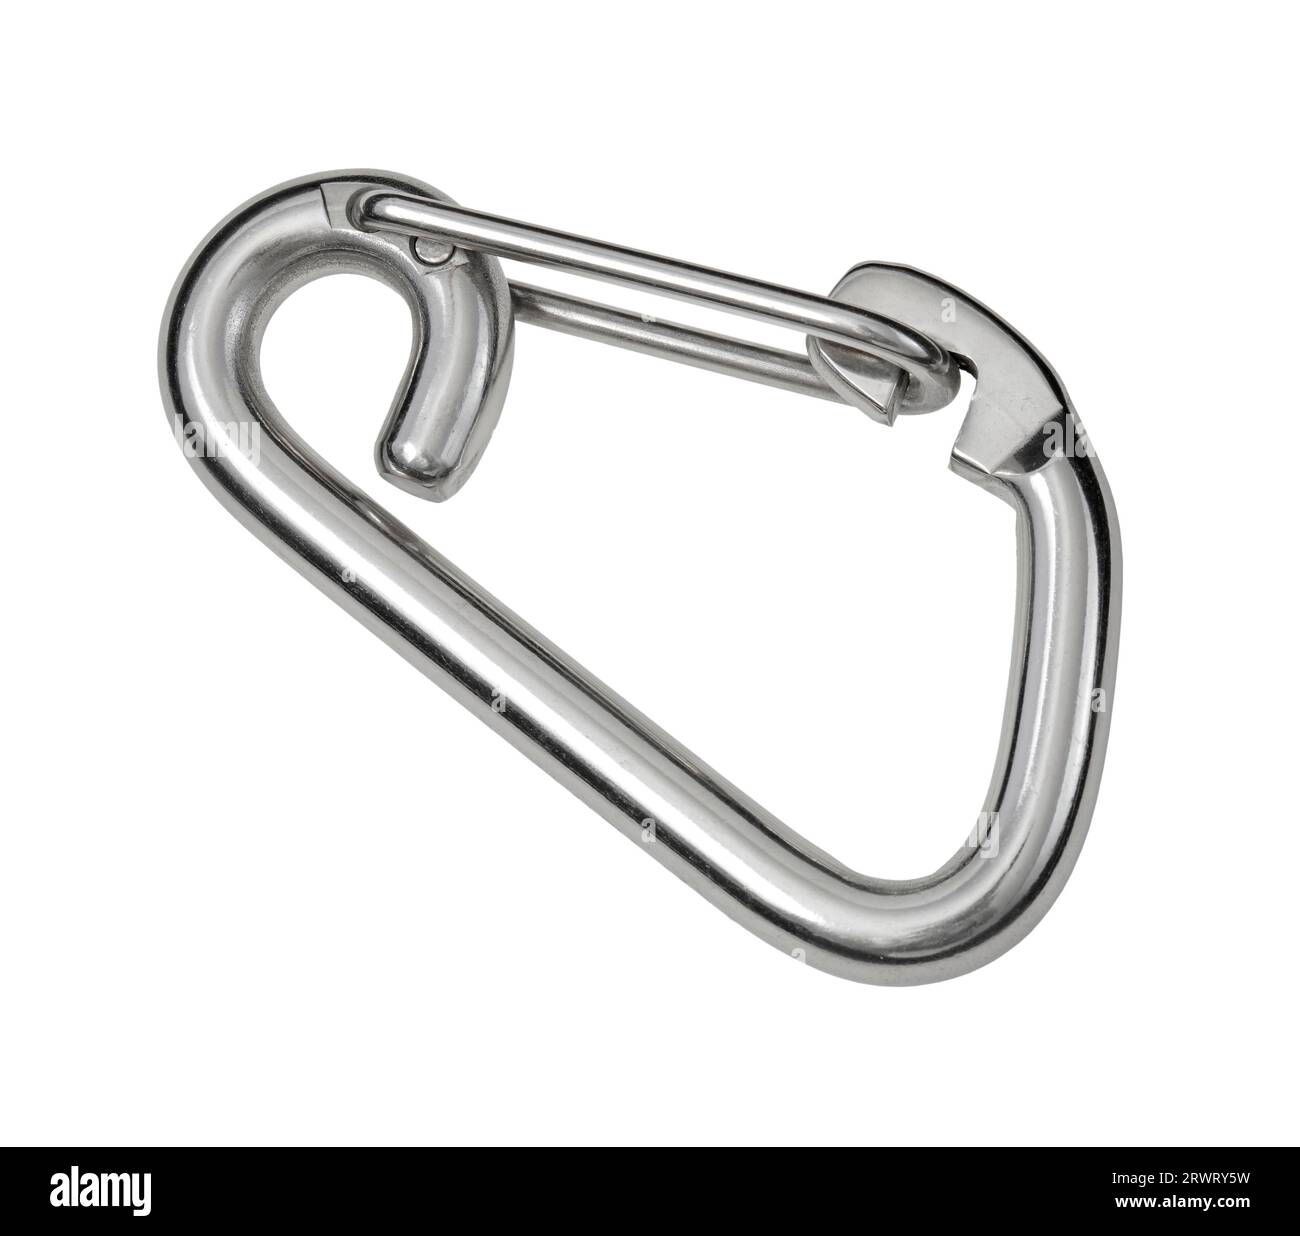 craft & design D shackle hook Locking Carabiner - Buy craft